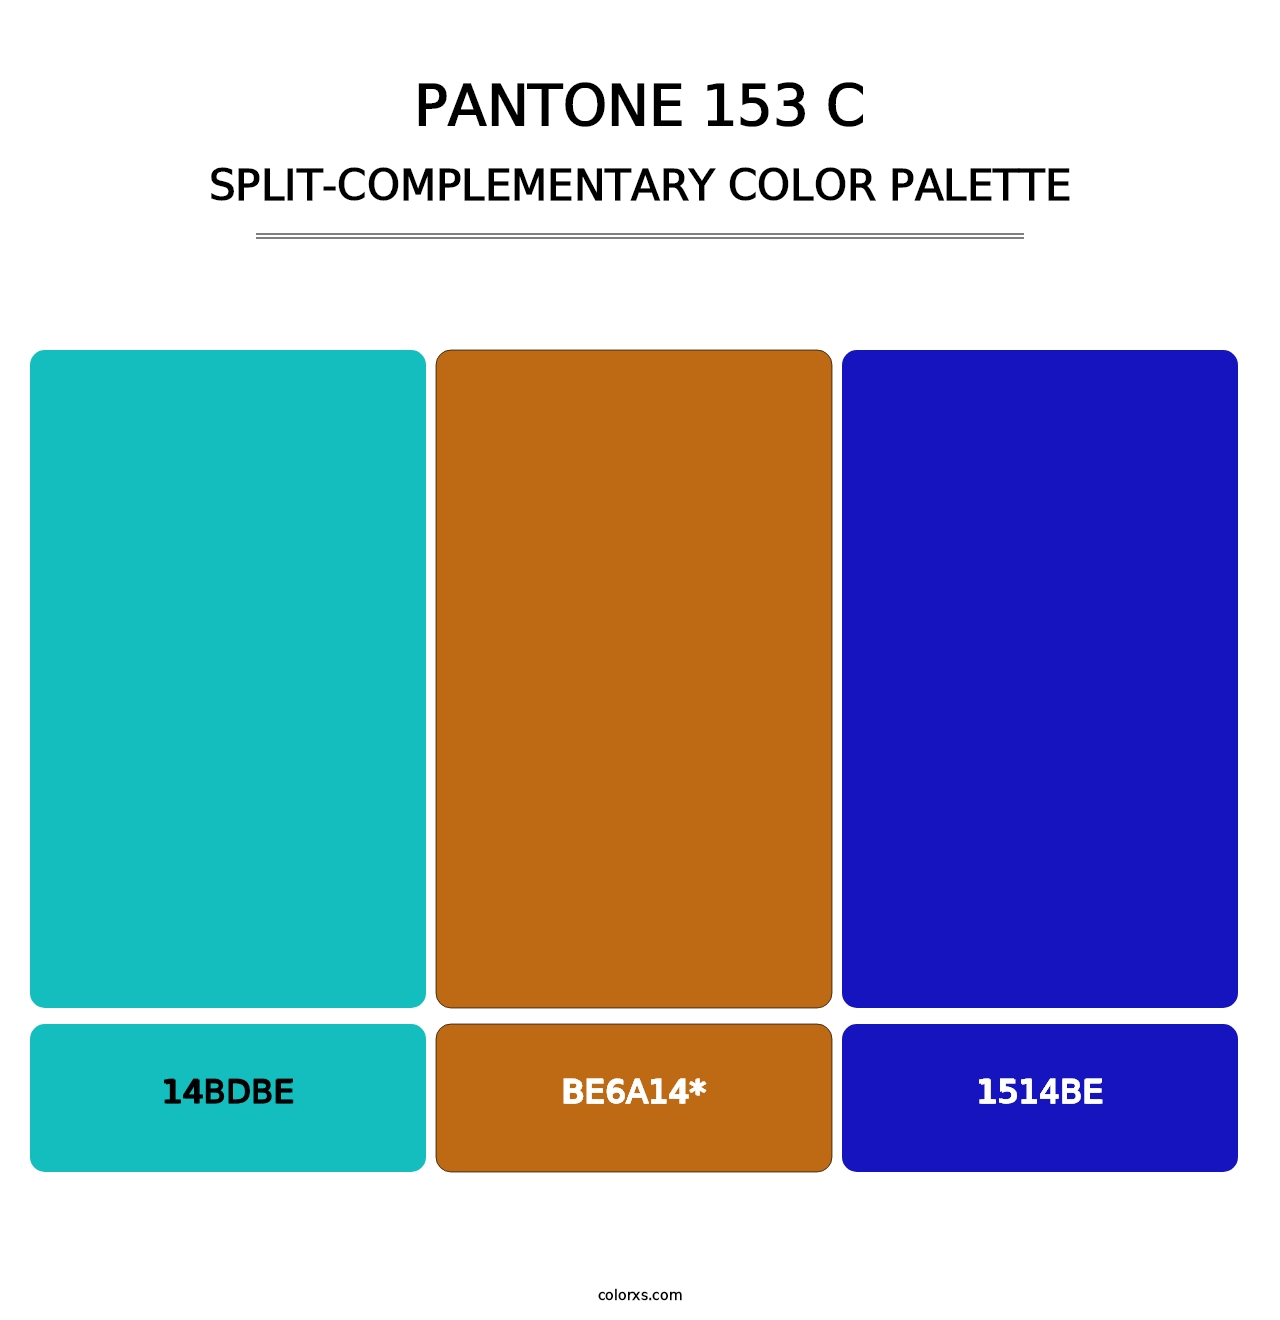 PANTONE 153 C - Split-Complementary Color Palette